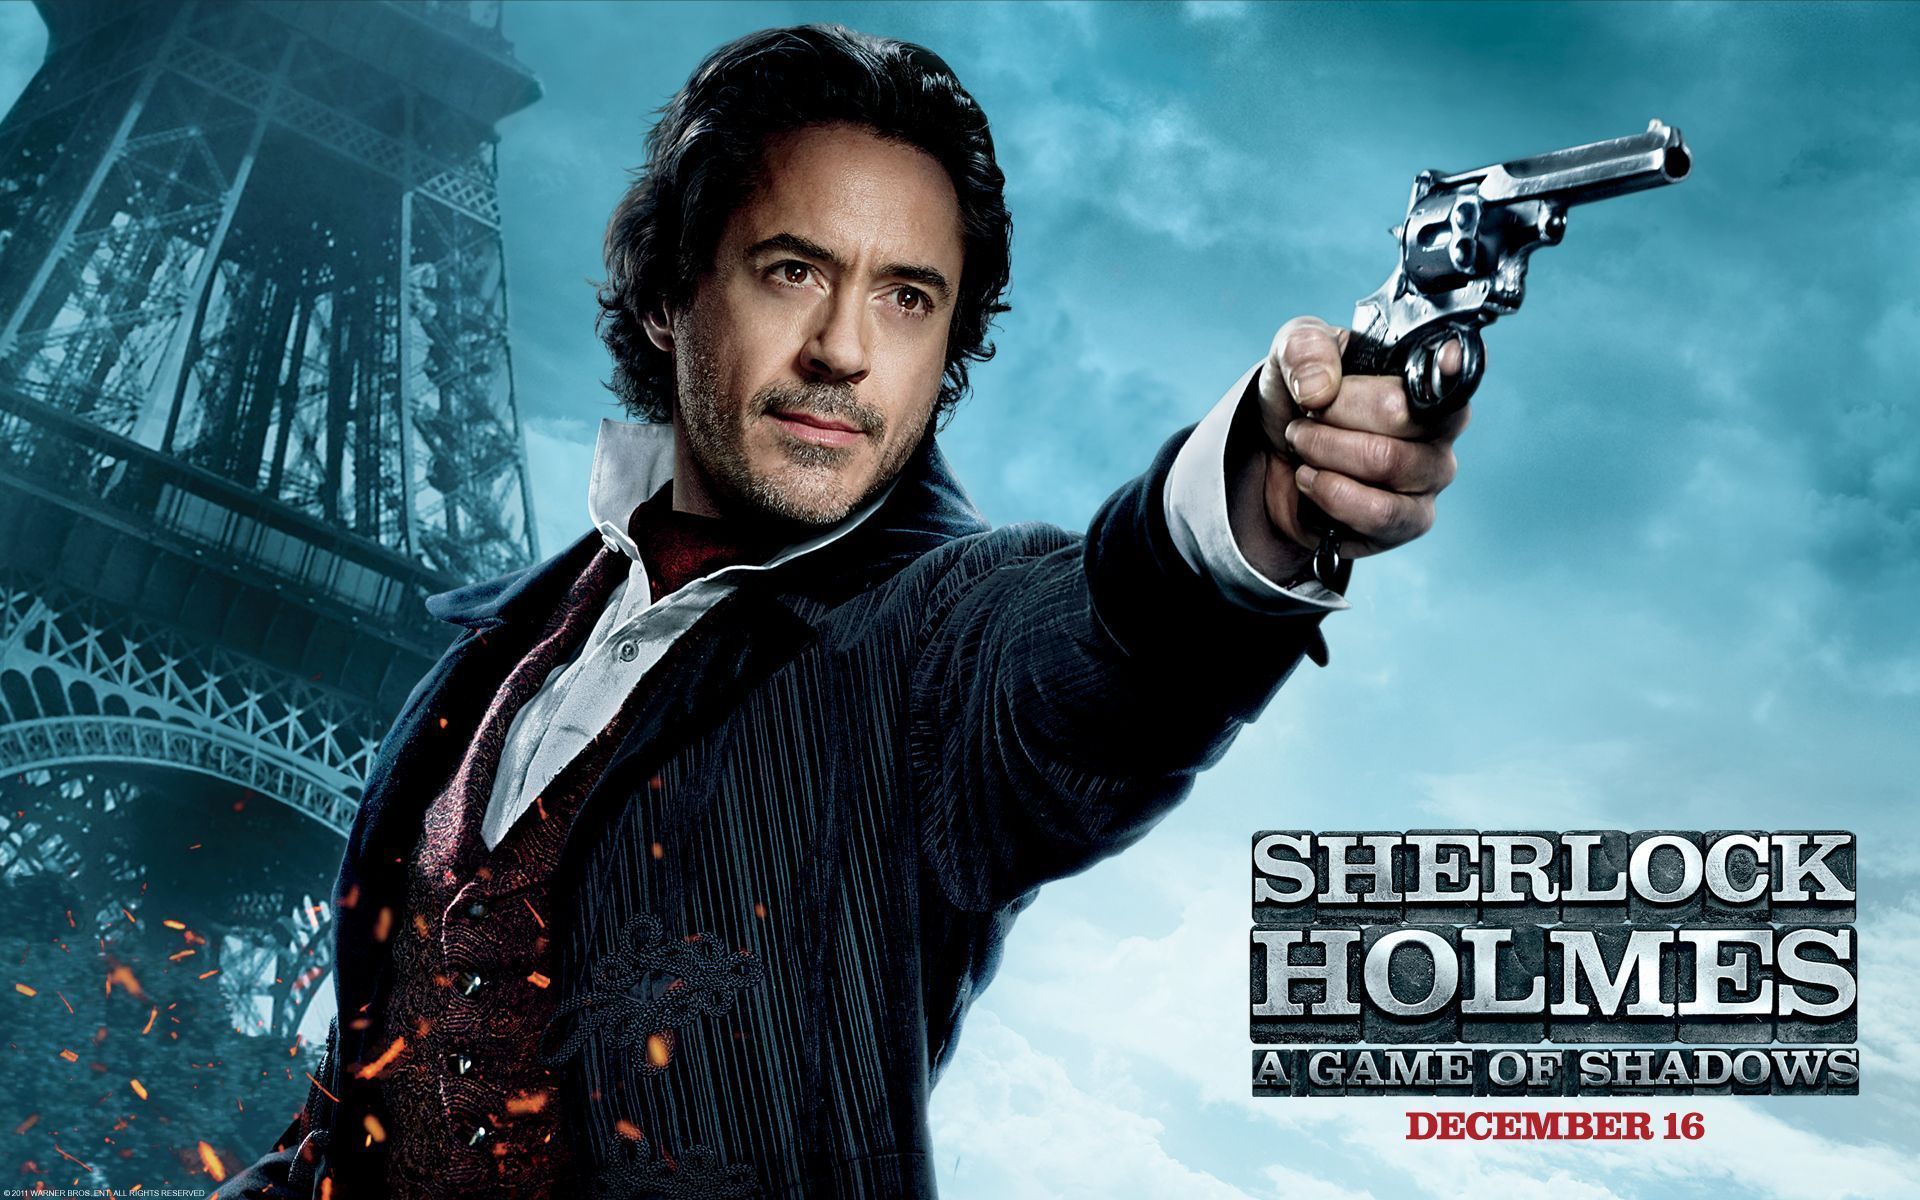 Robert Downey Jr in Sherlock Holmes 2 Wallpapers HD Backgrounds